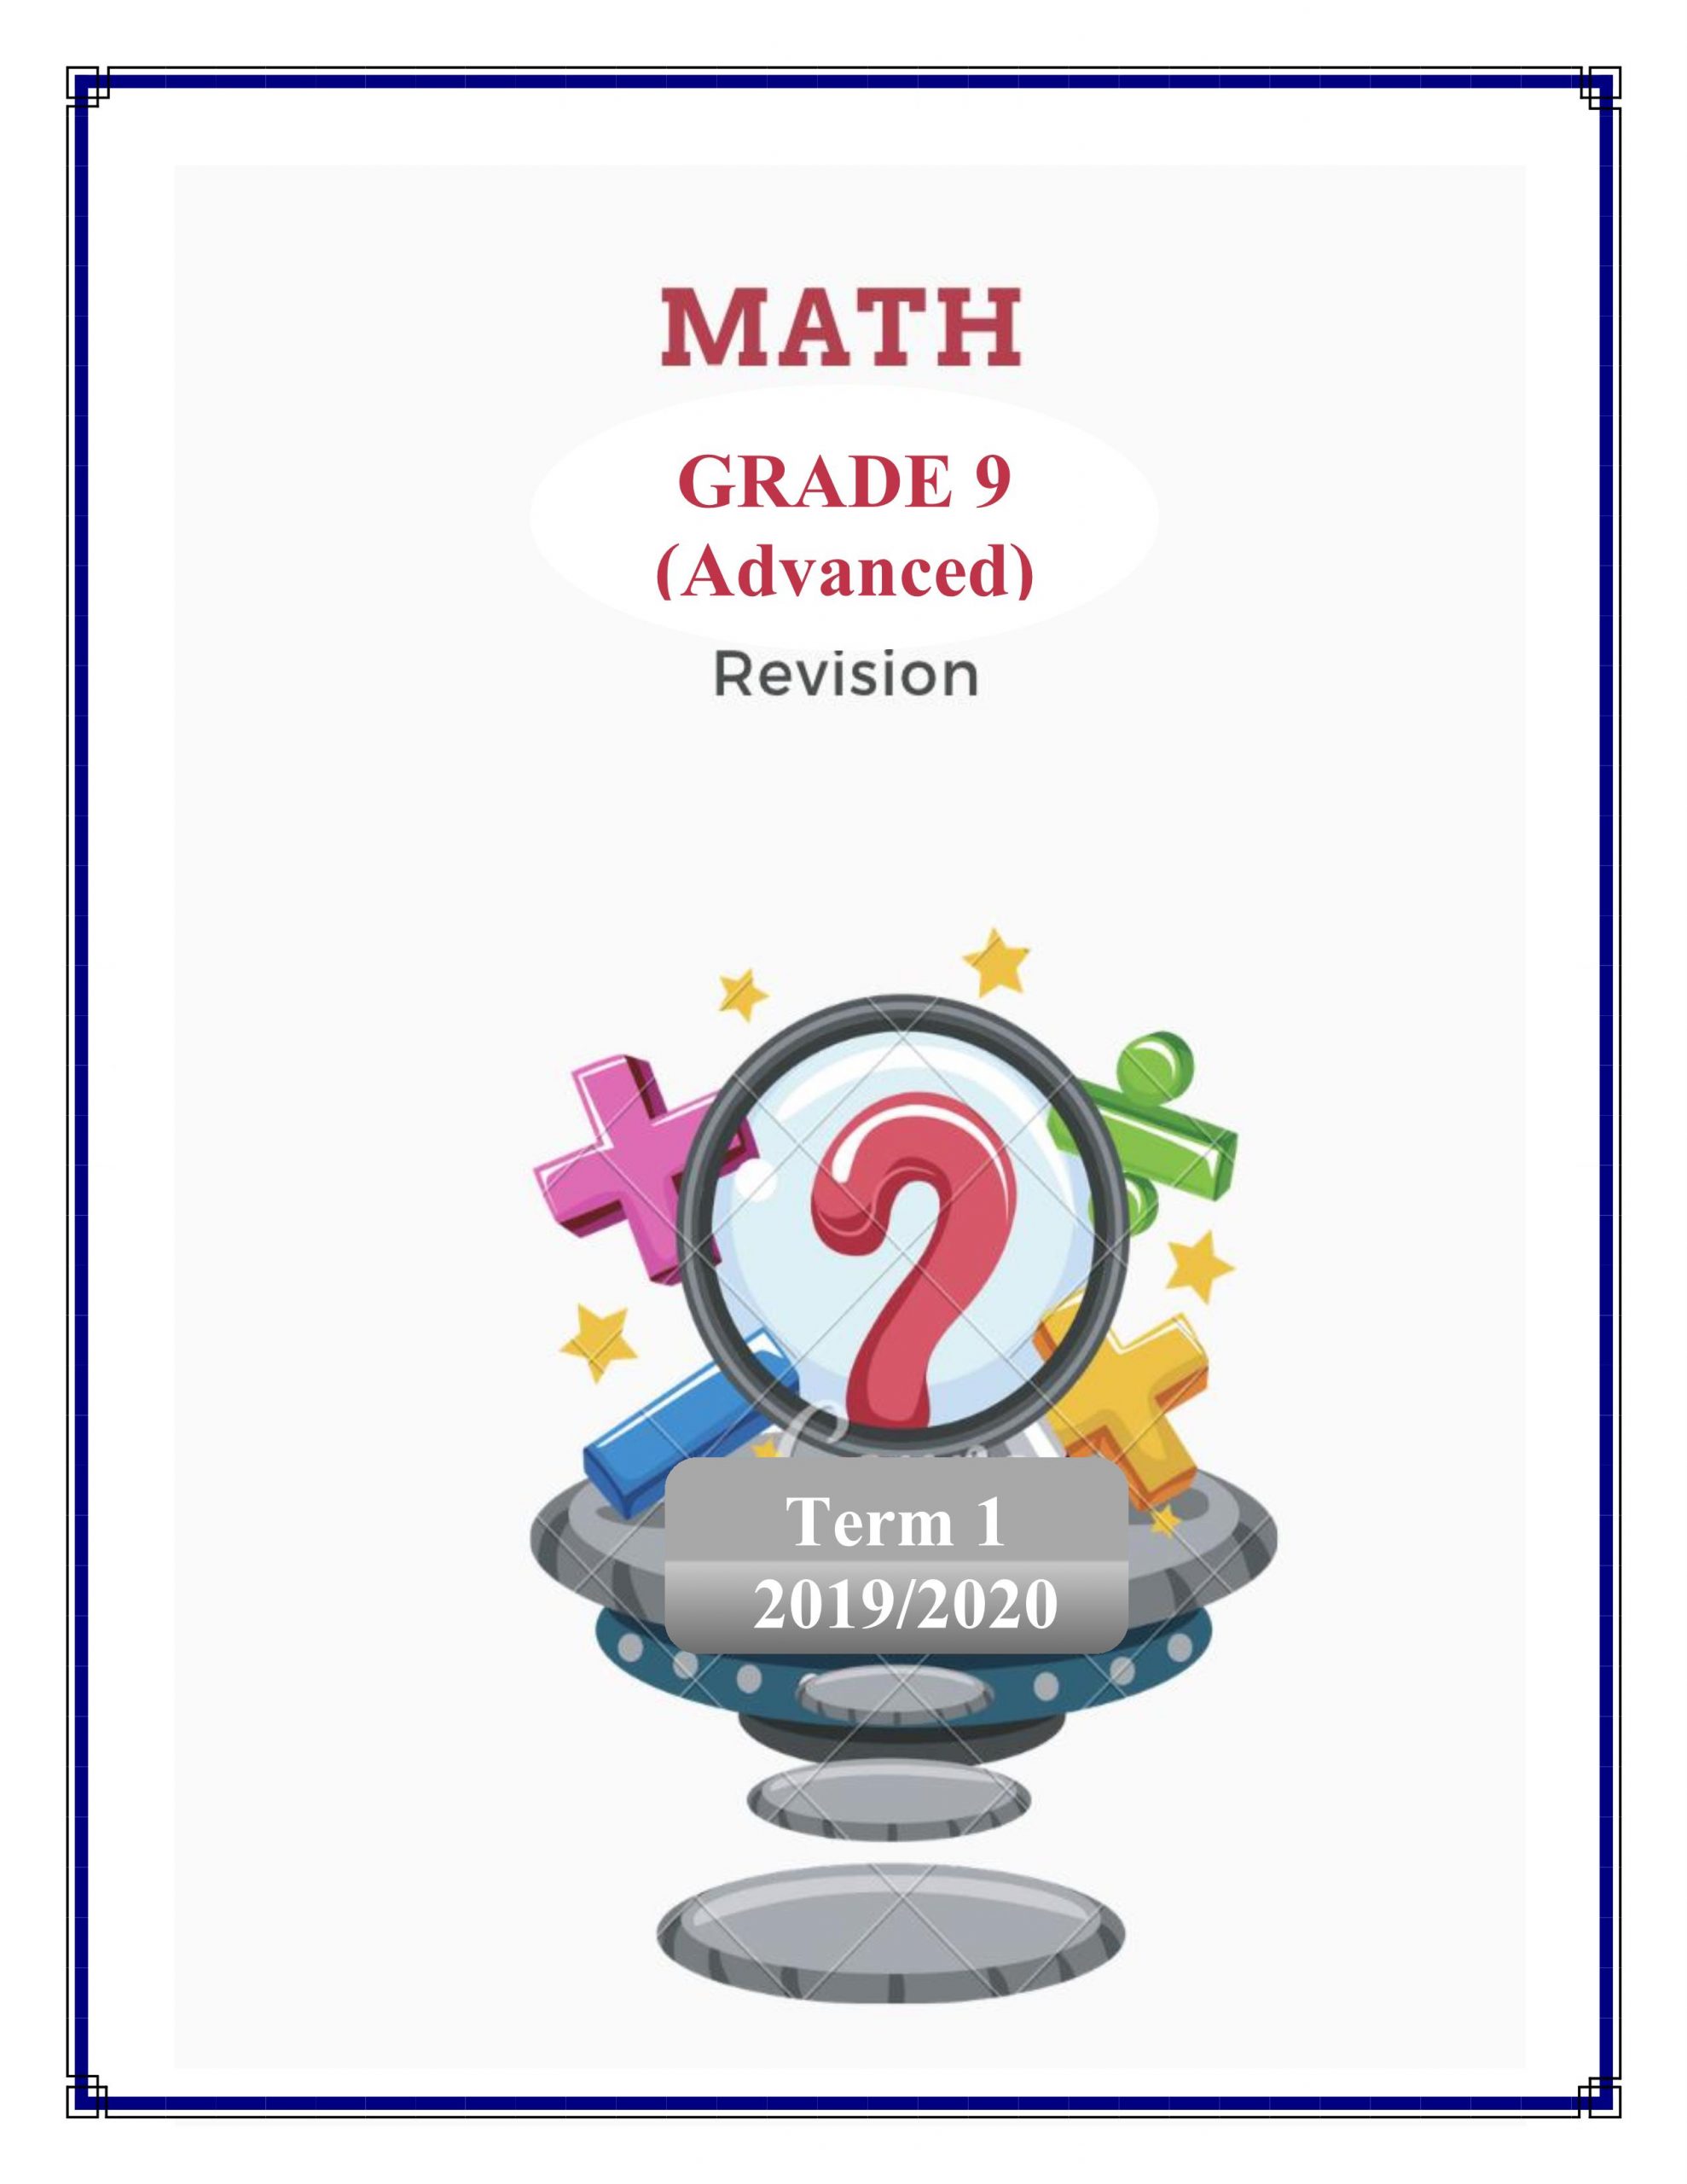 حل اوراق عمل مراجعة بالانجليزي الصف التاسع متقدم مادة الرياضيات المتكاملة